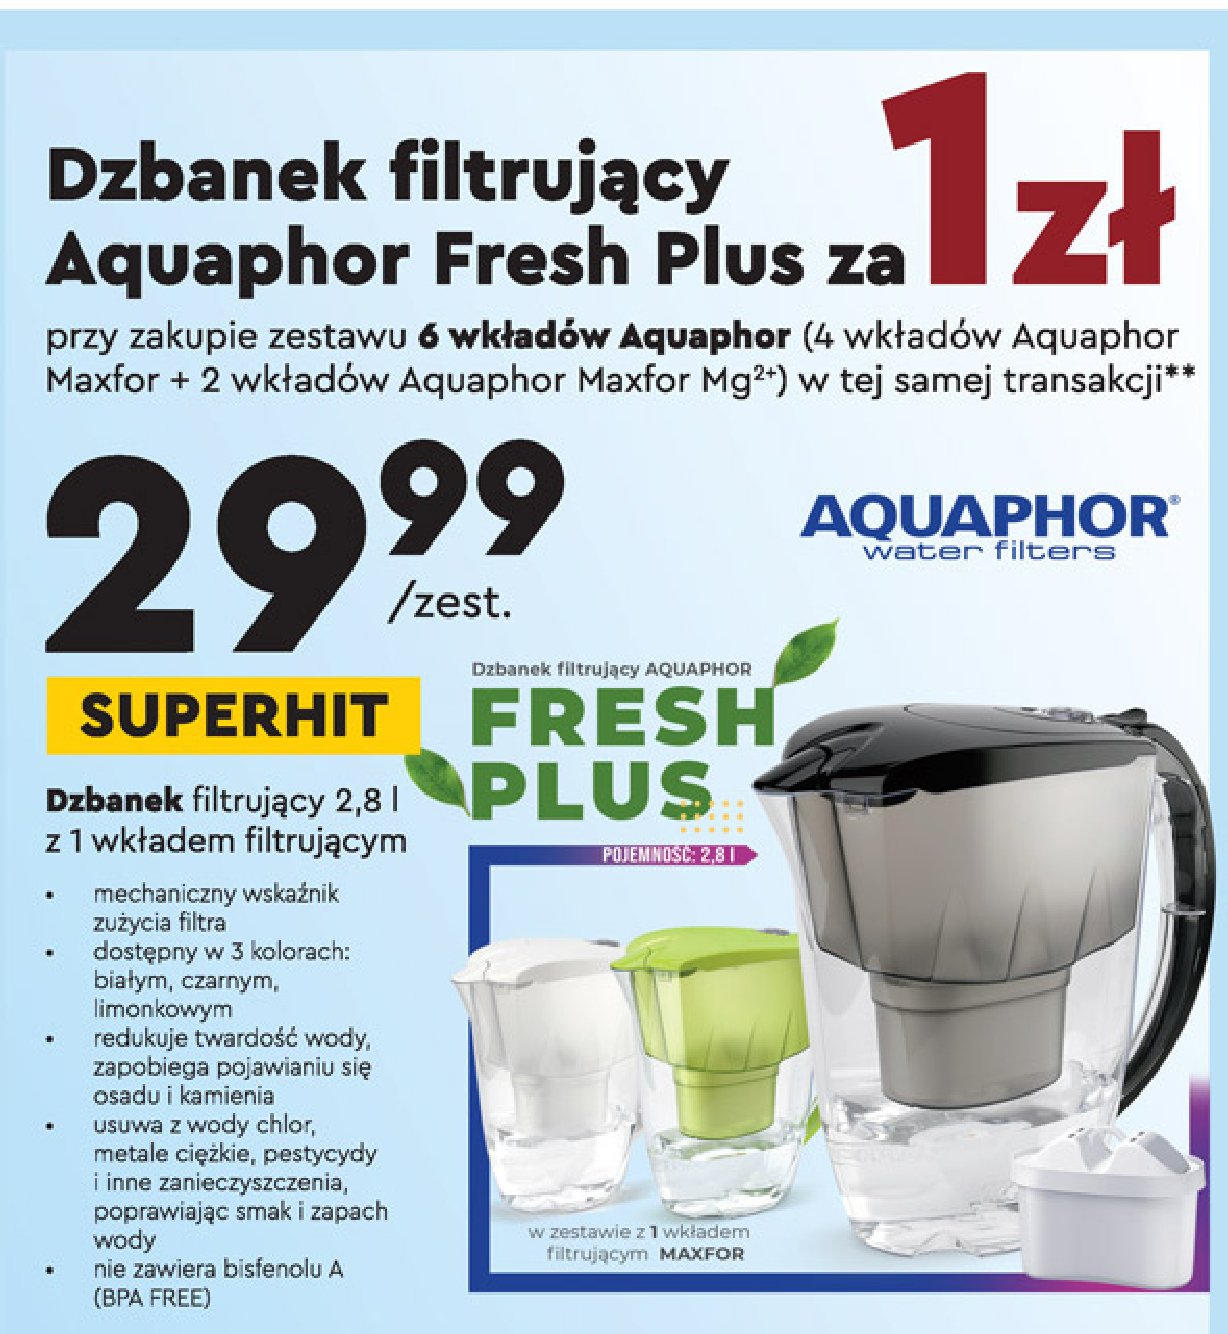 Dzbanek filtrujący fresh 2.8 l limonkowy Aquaphor promocja